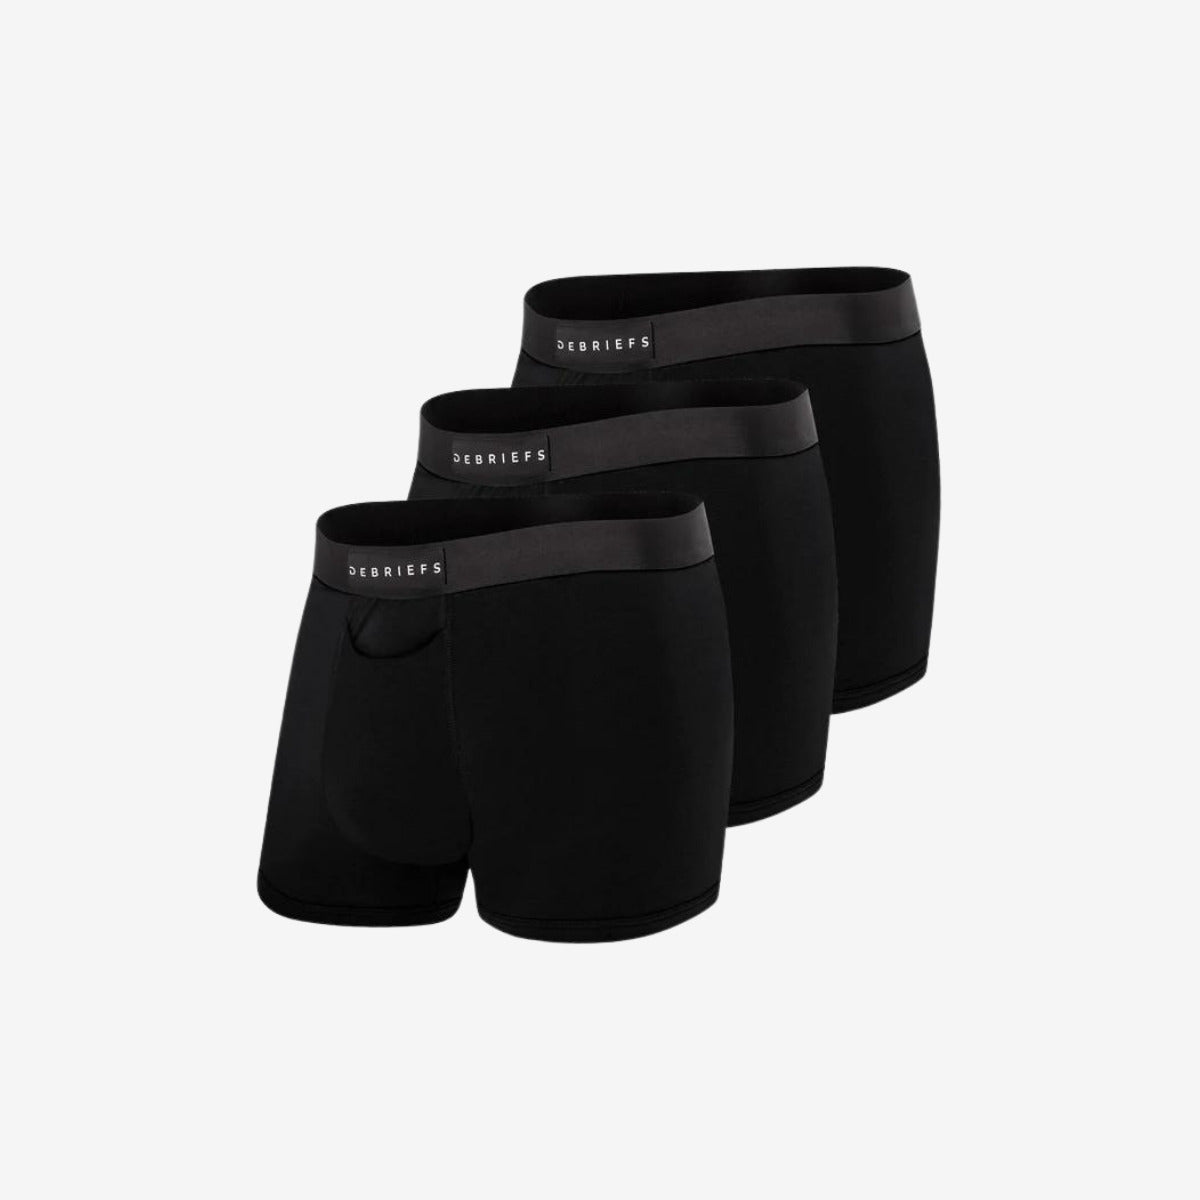 Mens Trunks Underwear Australia 3 Pack - All Black